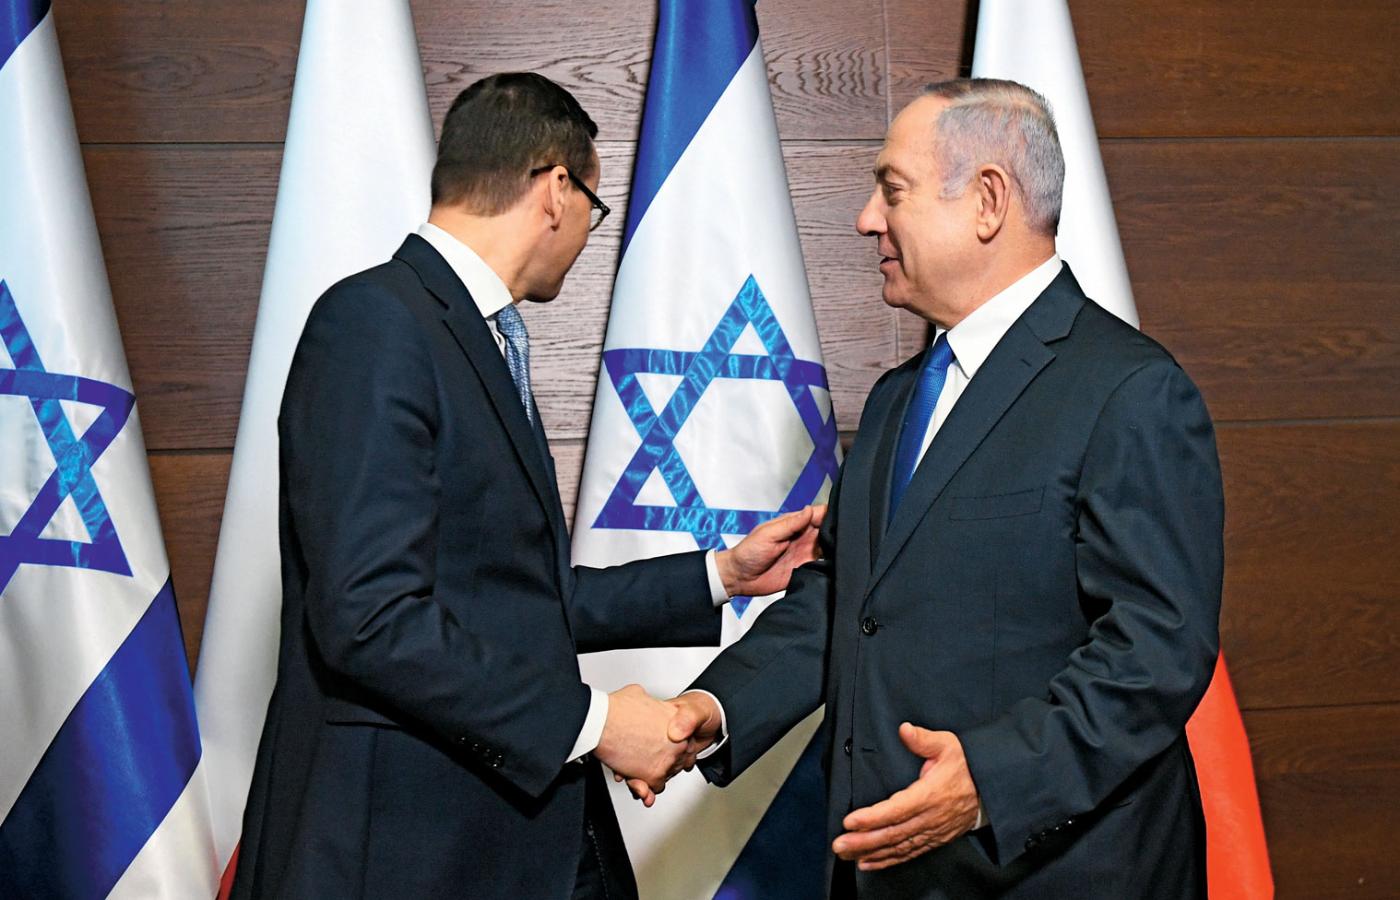 Premierzy Beniamin Netanjahu i Mateusz Morawiecki, Szczyt bliskowschodni w Warszawie.